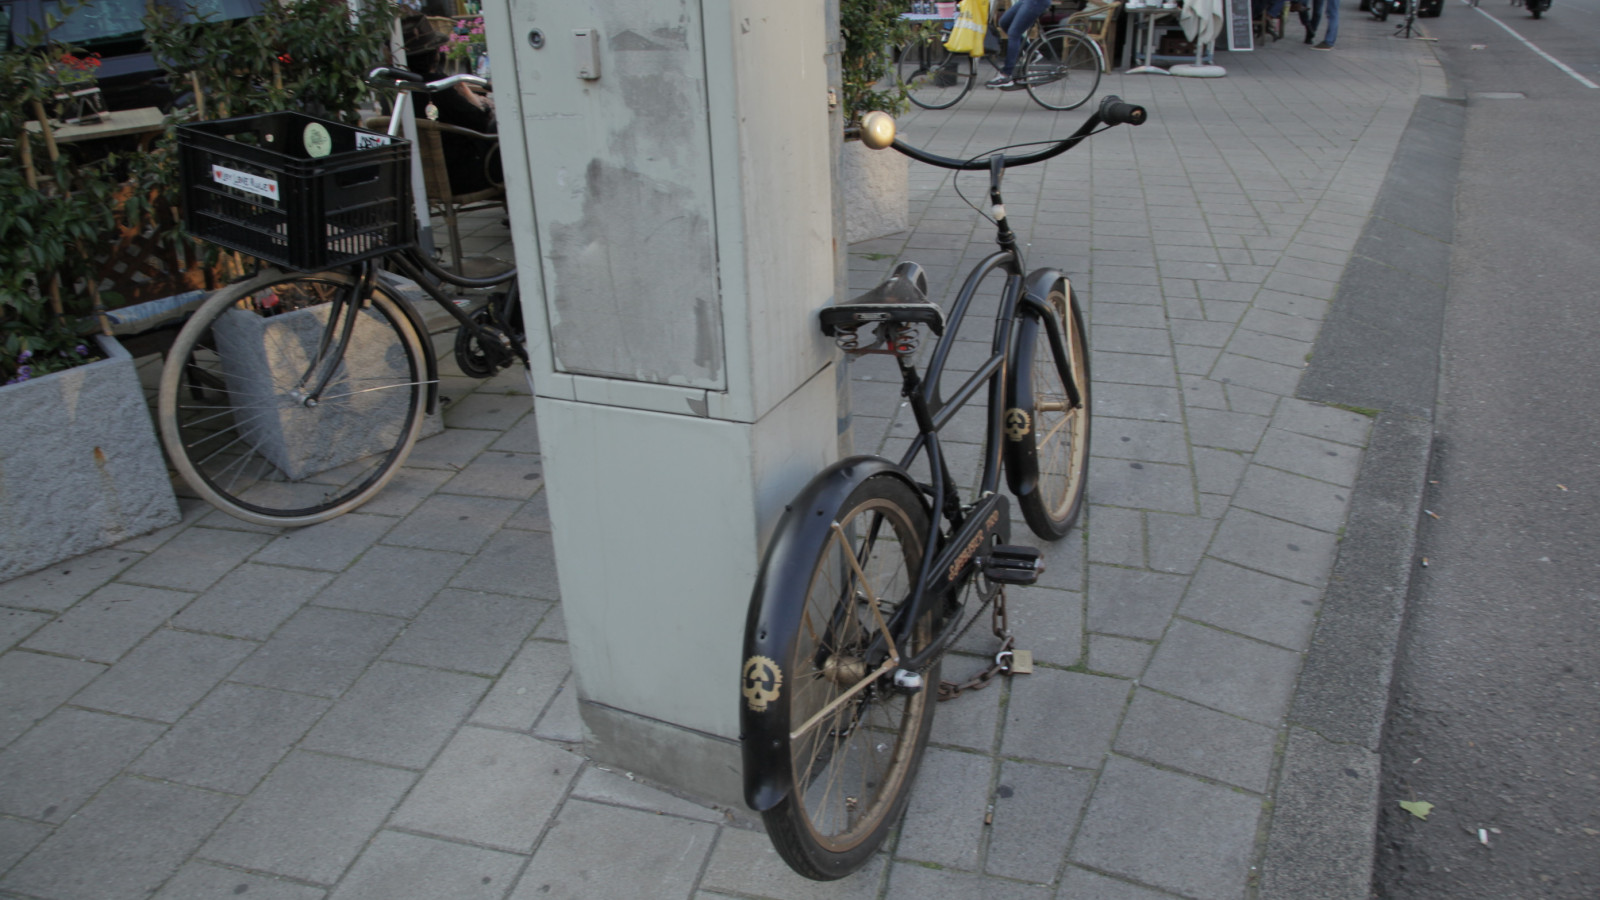 Fiets uit film over gestolen fietsen nu ook echt gejat